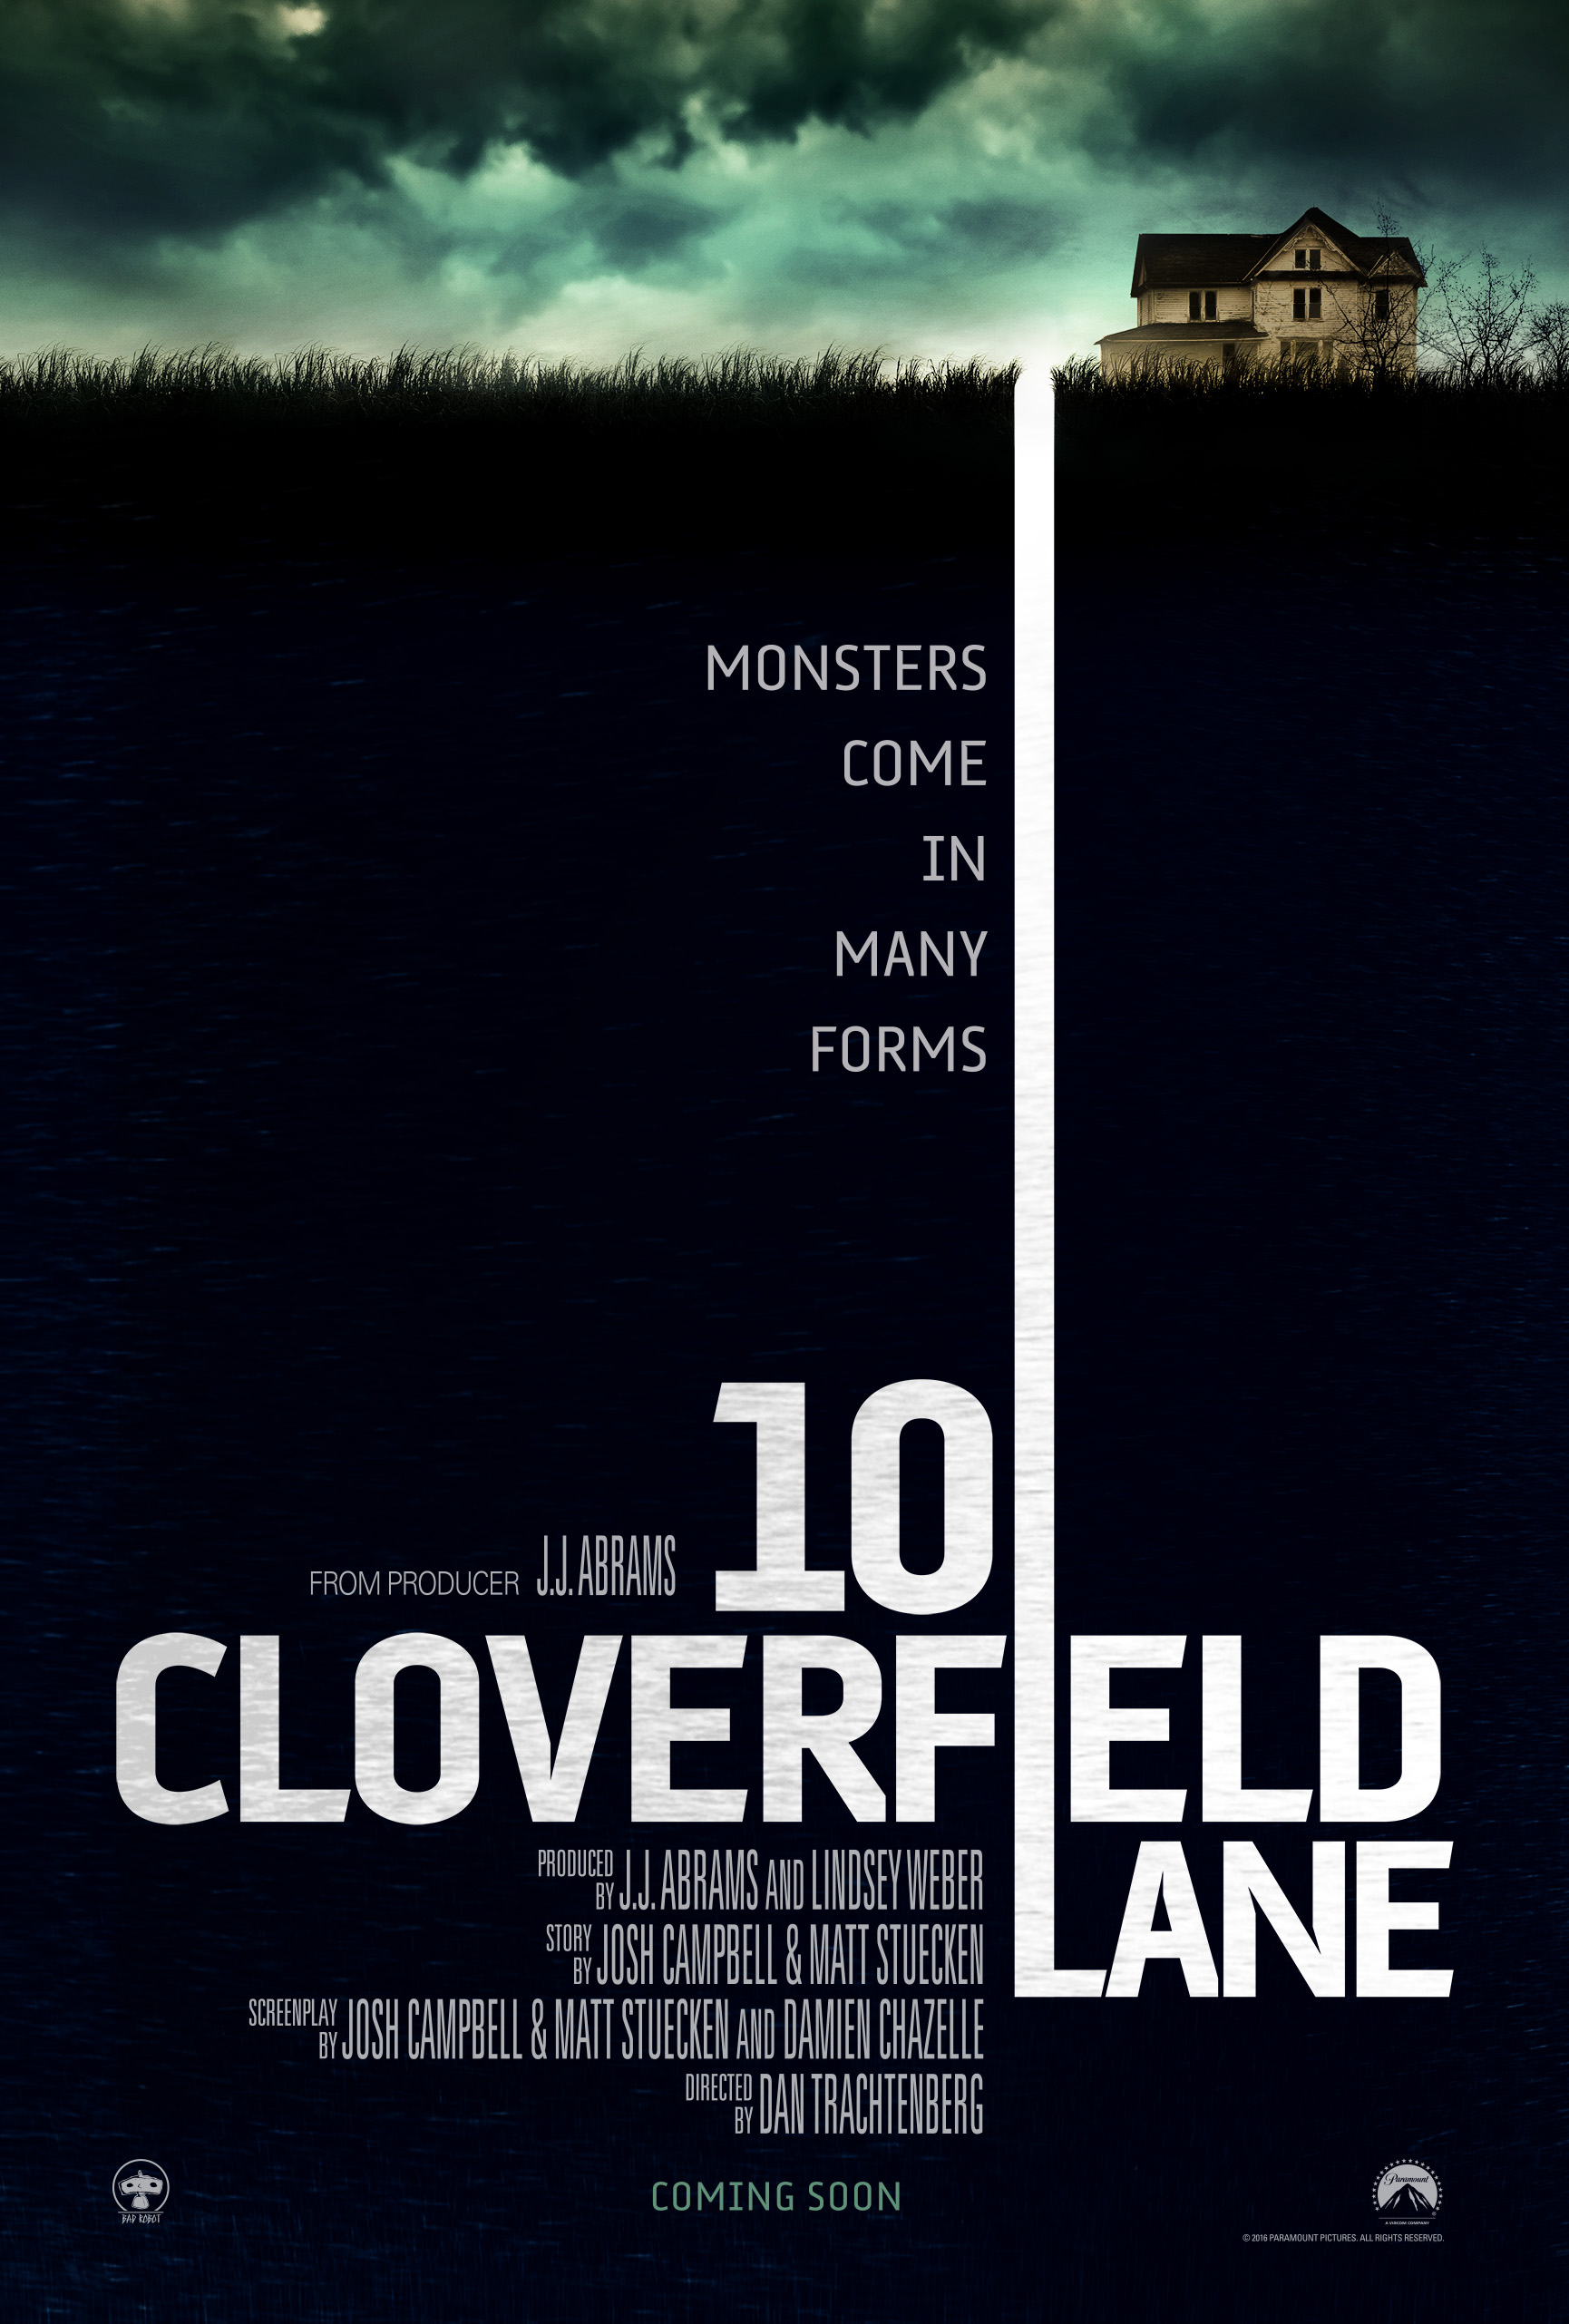 10 cloverfield lane-Teaser Poster